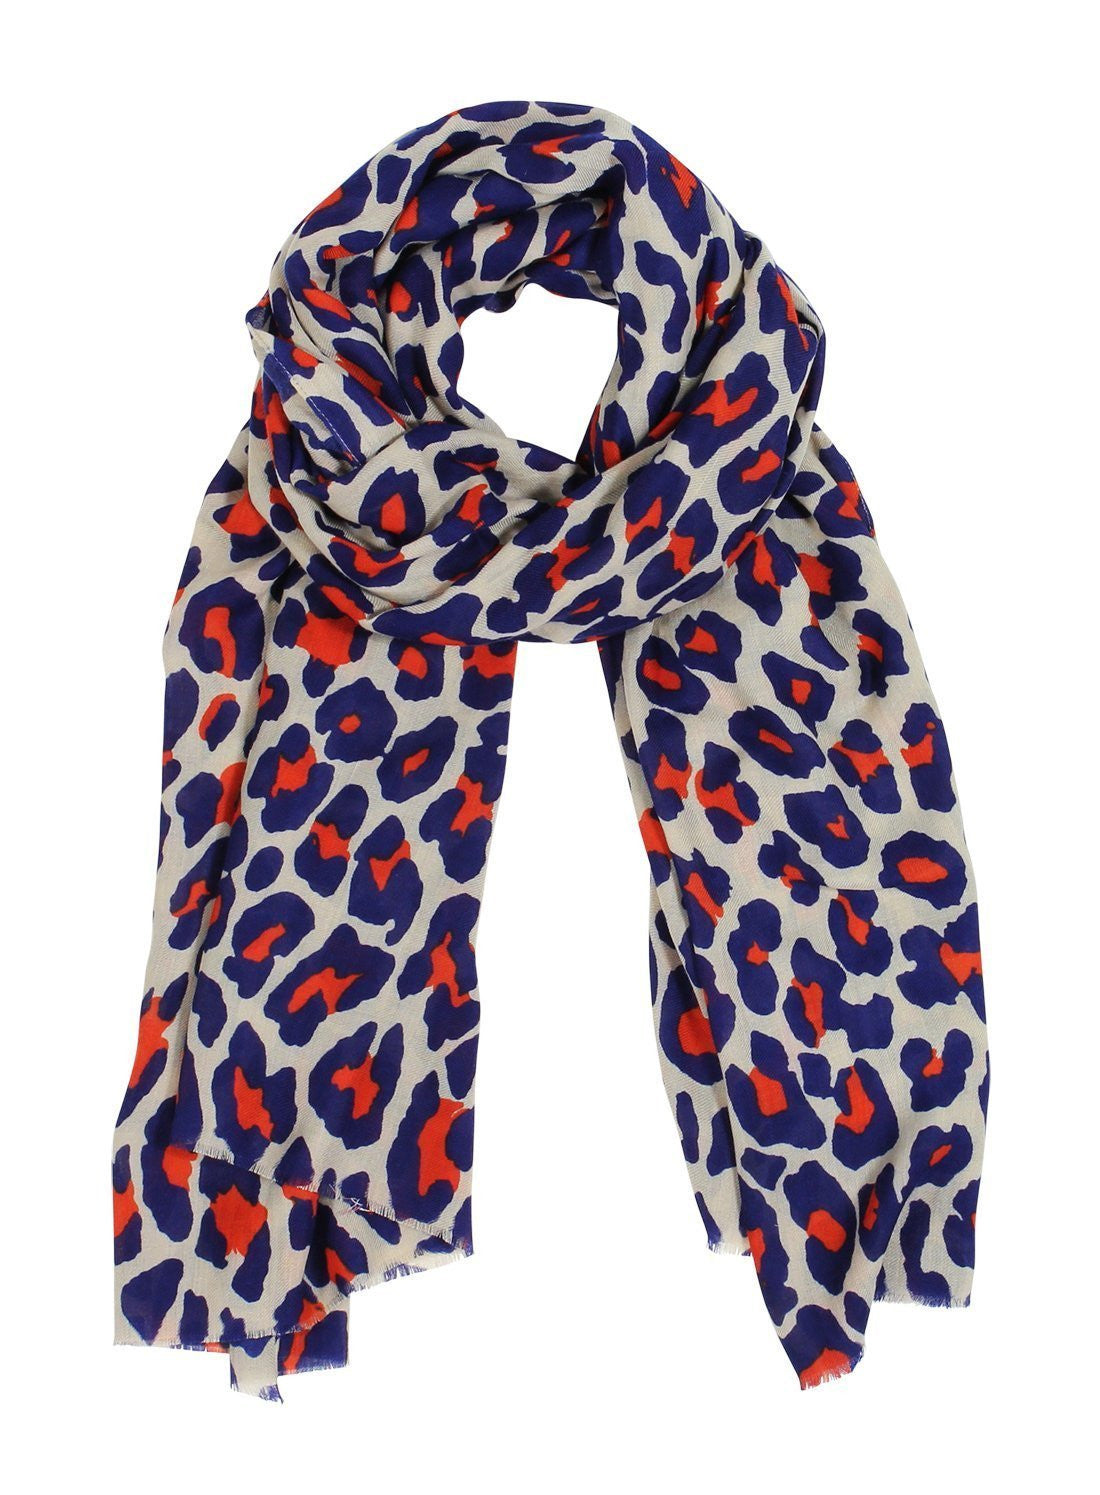 🧡 Scarf Leopard Print - Short scarf